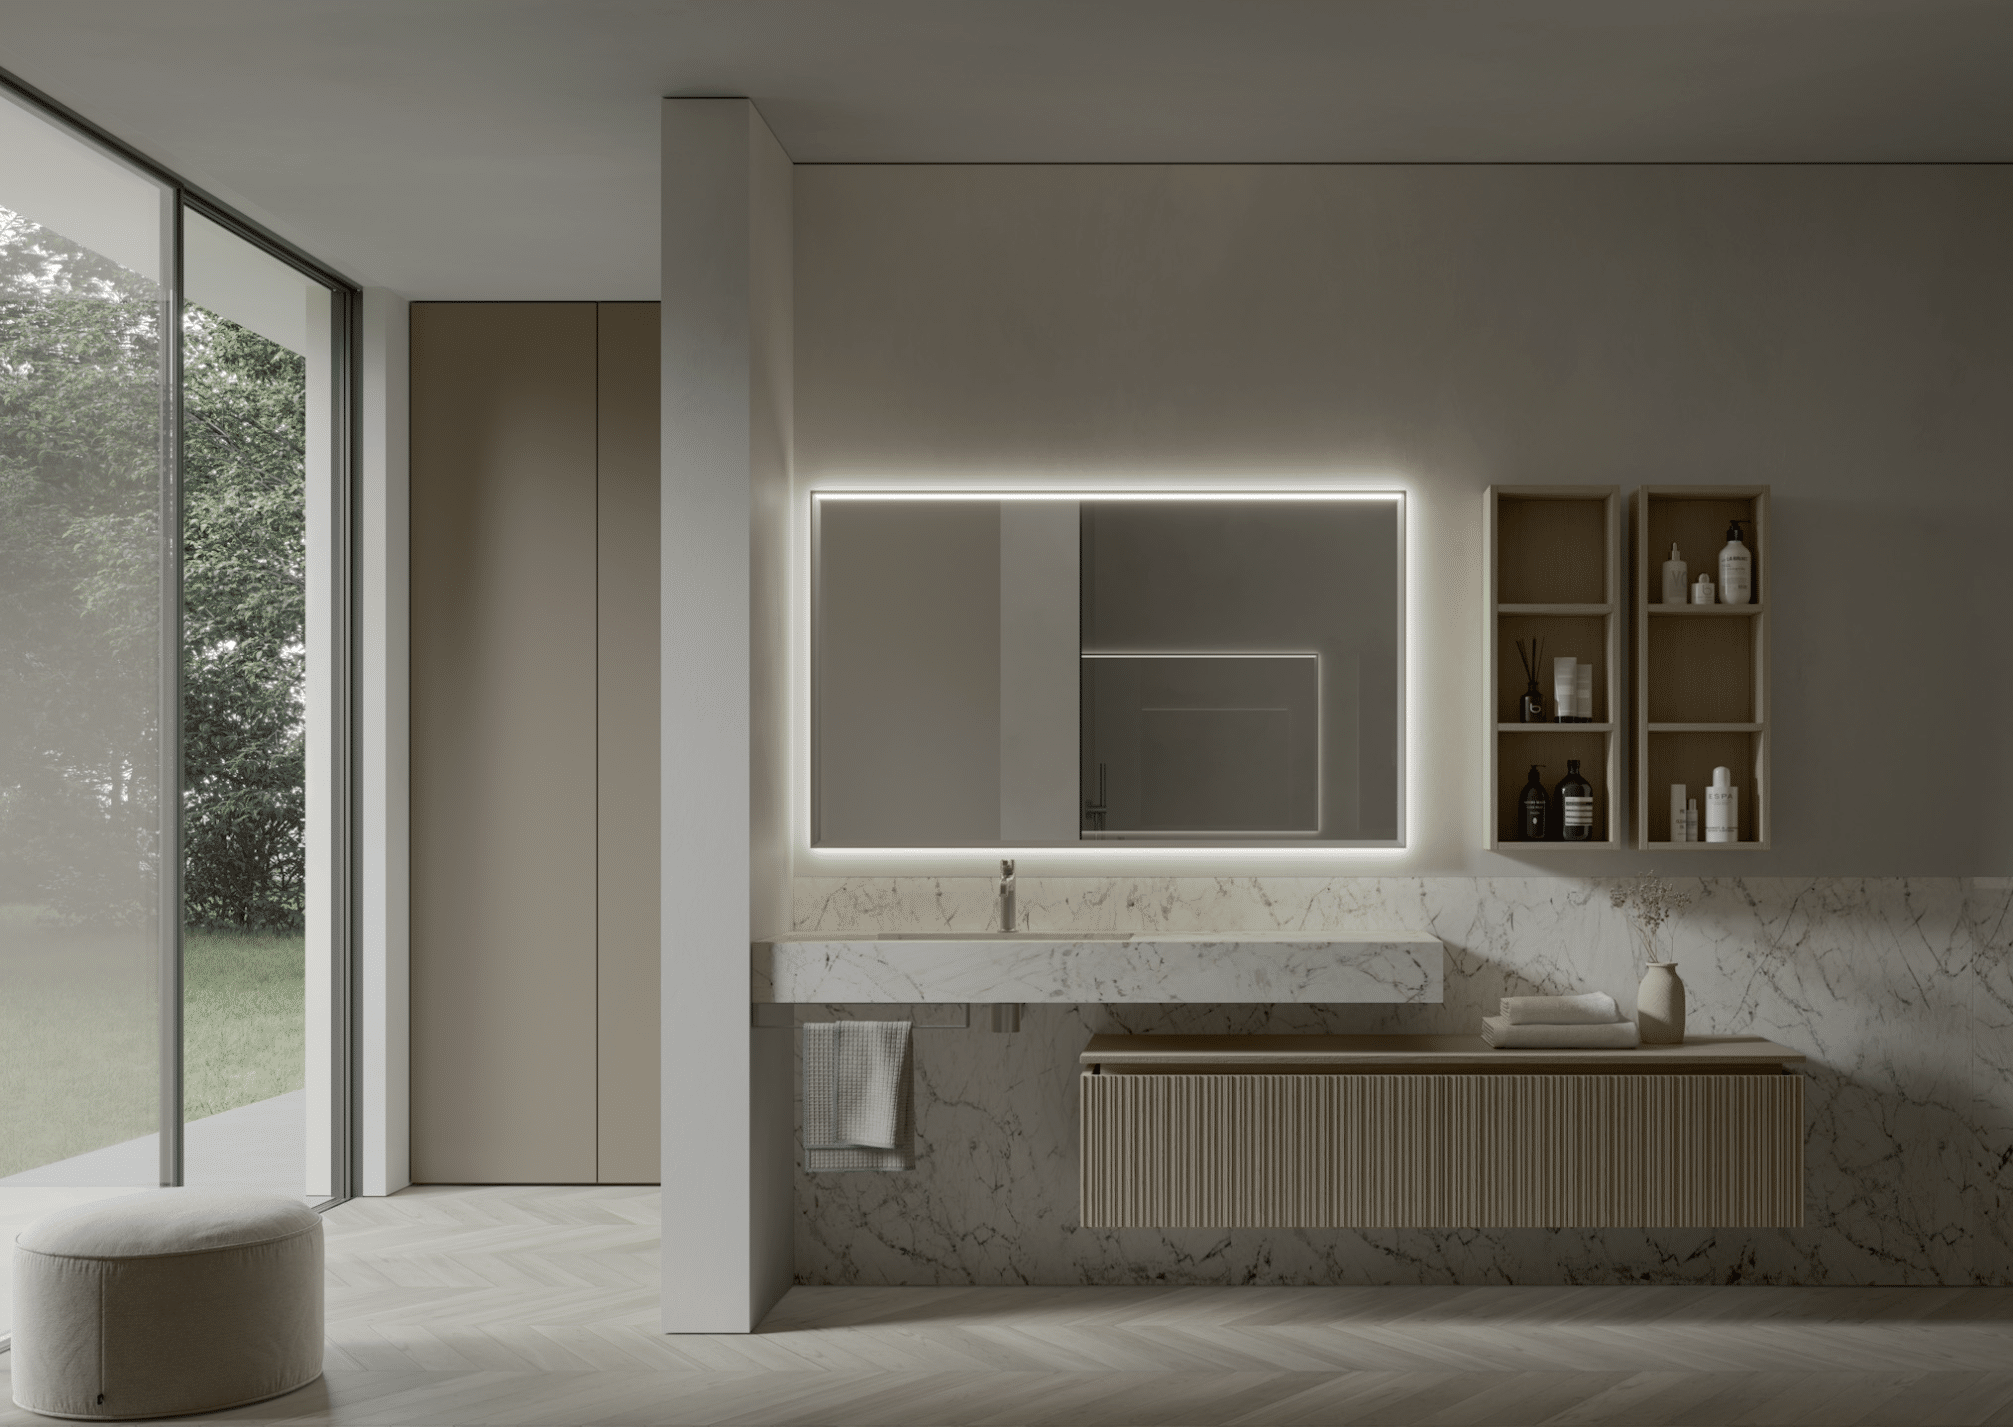 IDEA GOUP präsentiert ein modernes Badezimmer in grau/beige, mit Waschbecken aus weiß/schwarzem Mamor einem Holzschrank darunter und beleuchtetem Spiegel.